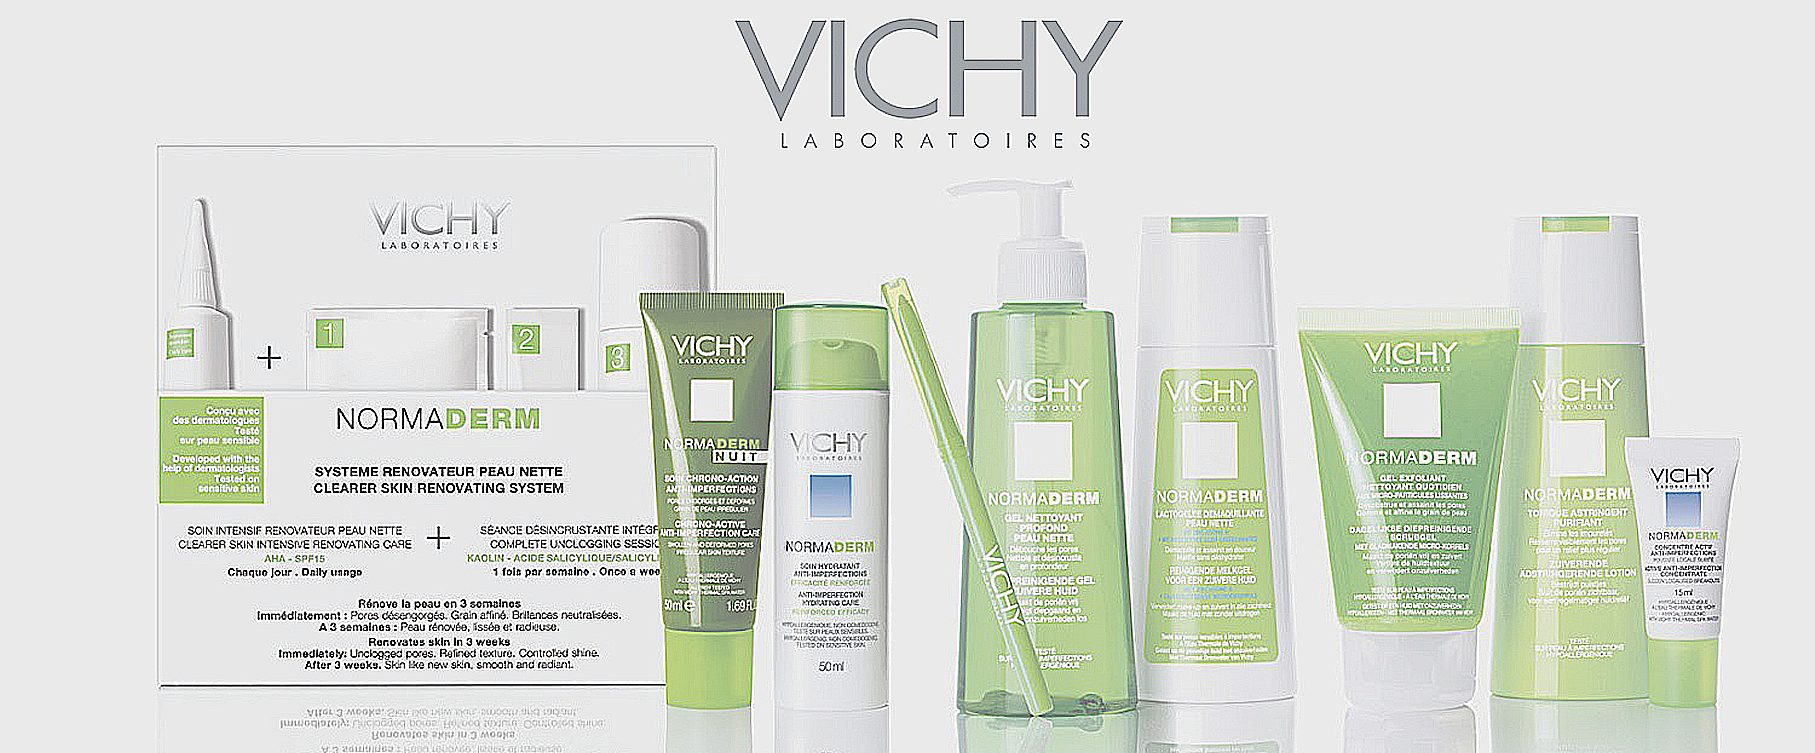 Vichy creme og shampoo for din sundheds skyld